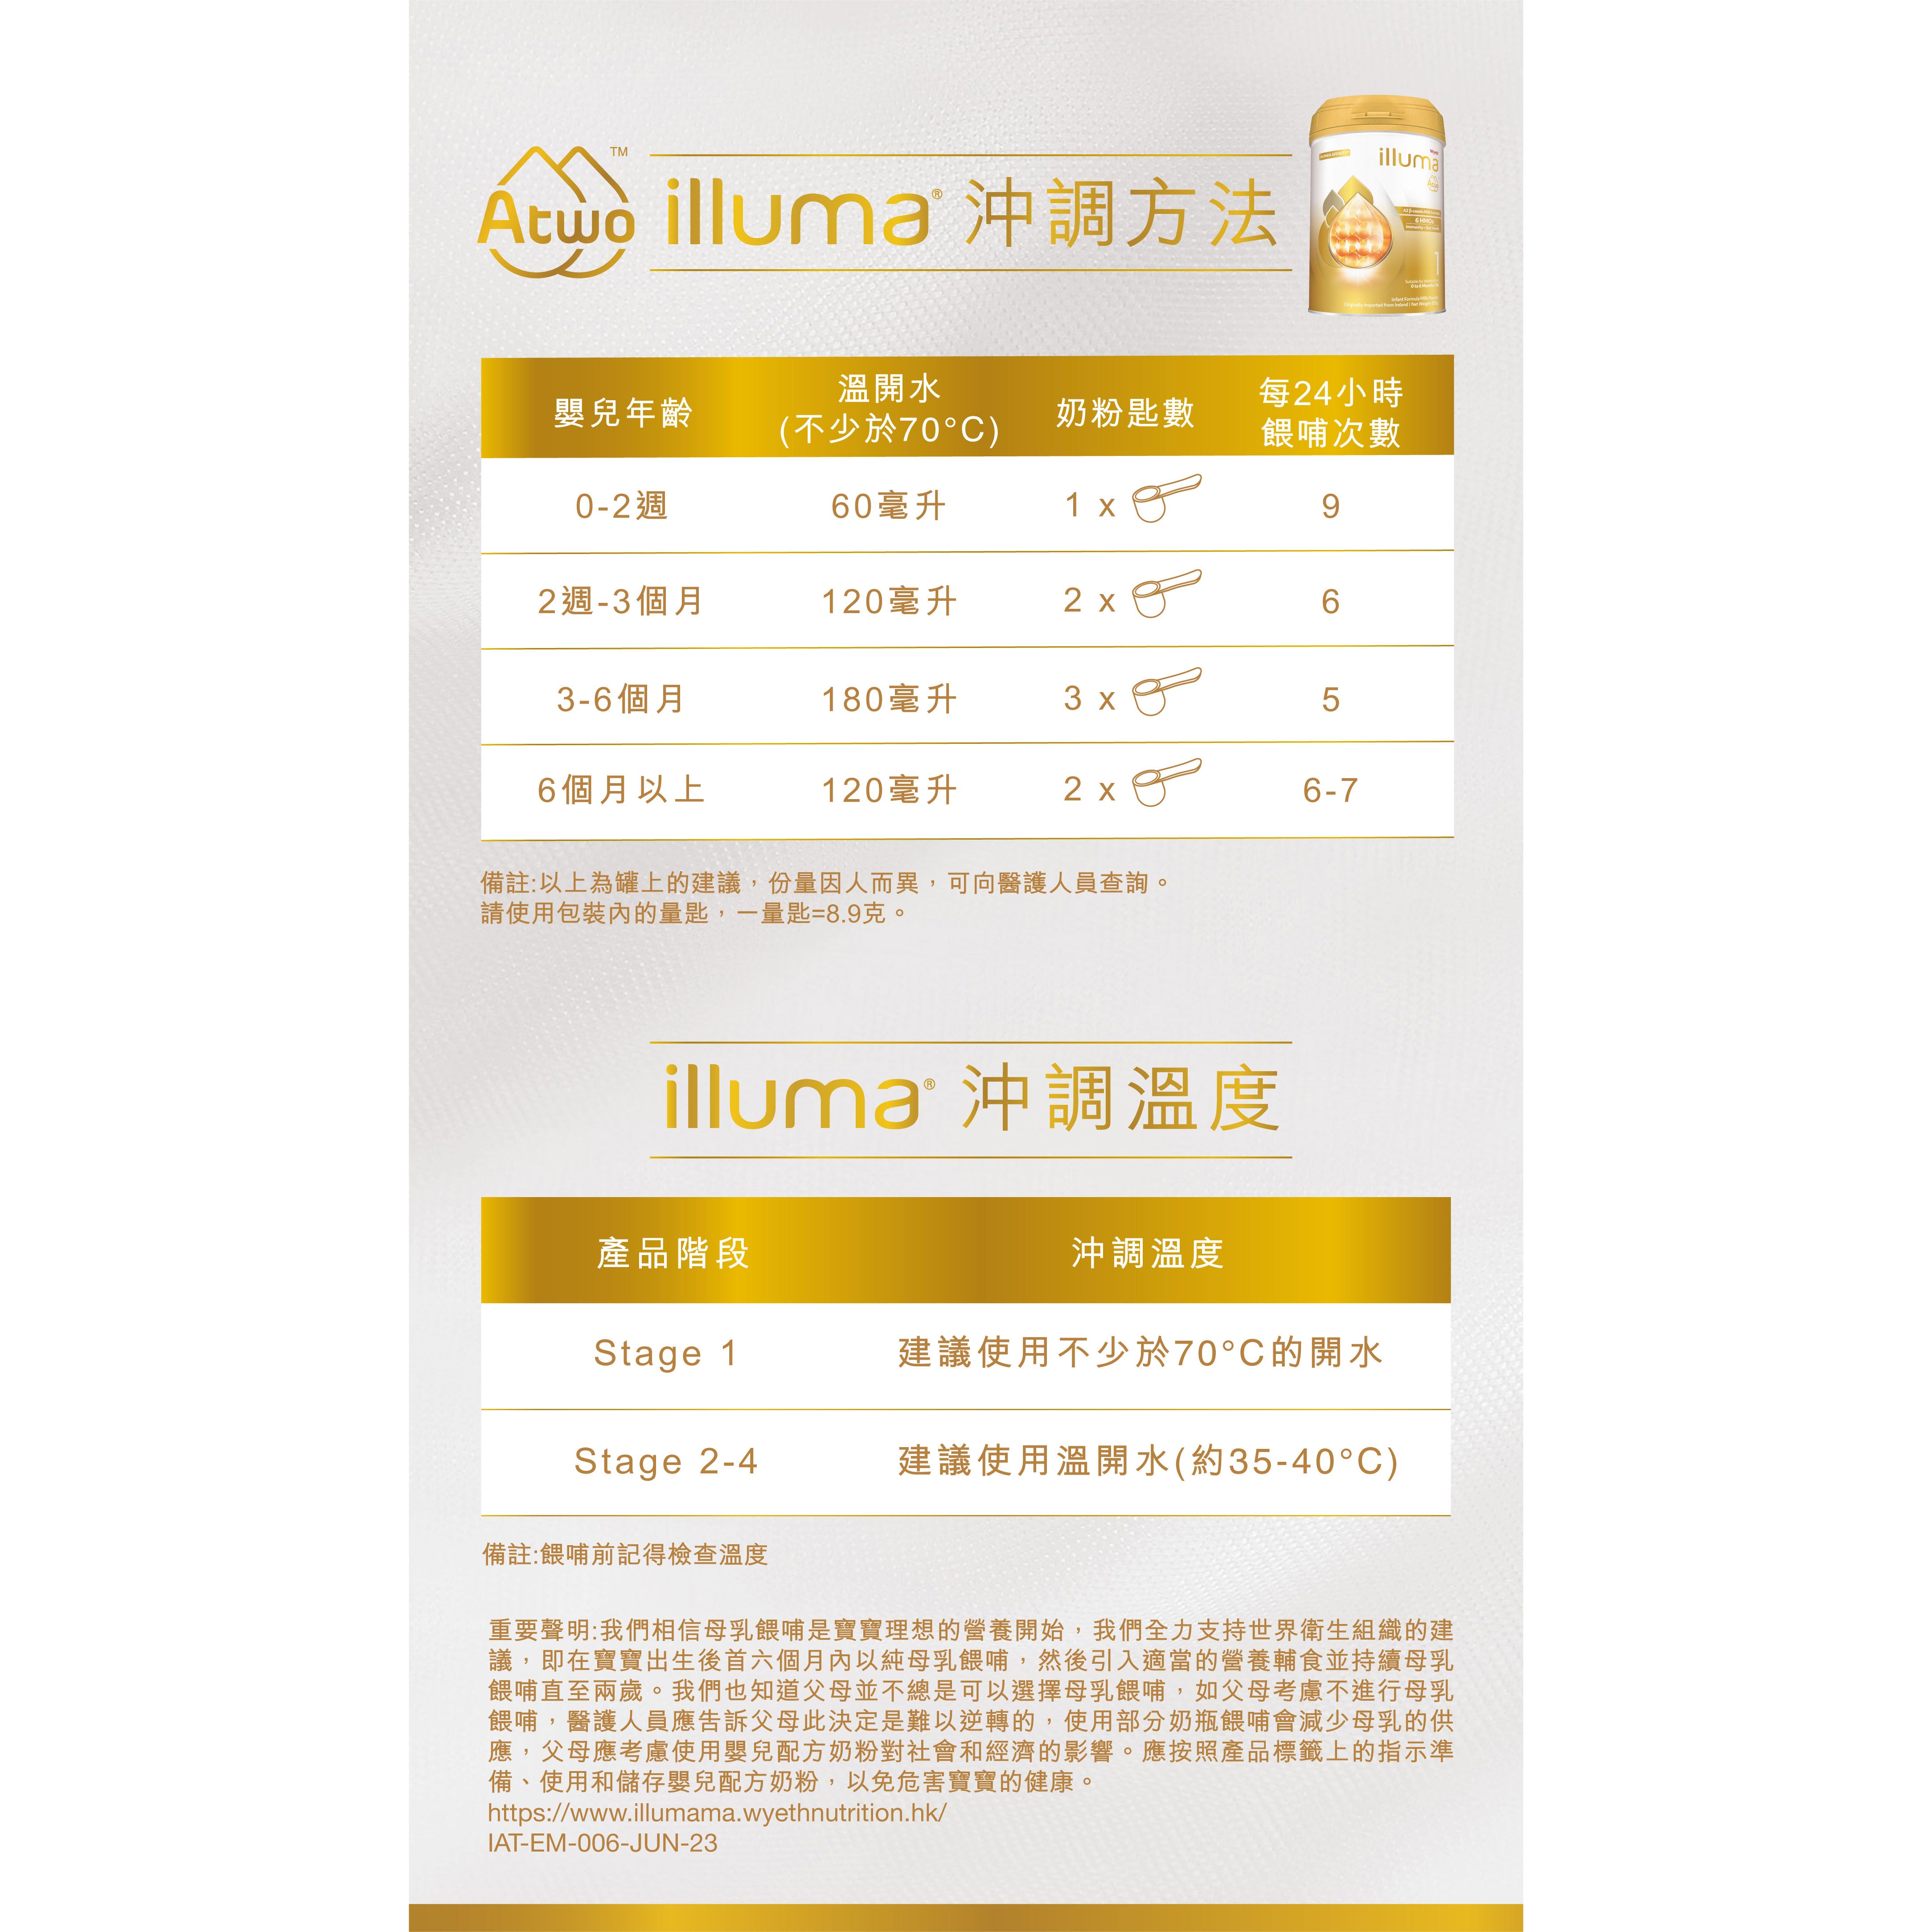 惠氏ILLUMA Atwo A2 β 酪蛋白1號 初生嬰兒配方奶粉 850克 0-6個月 原箱6罐 香港原裝行貨